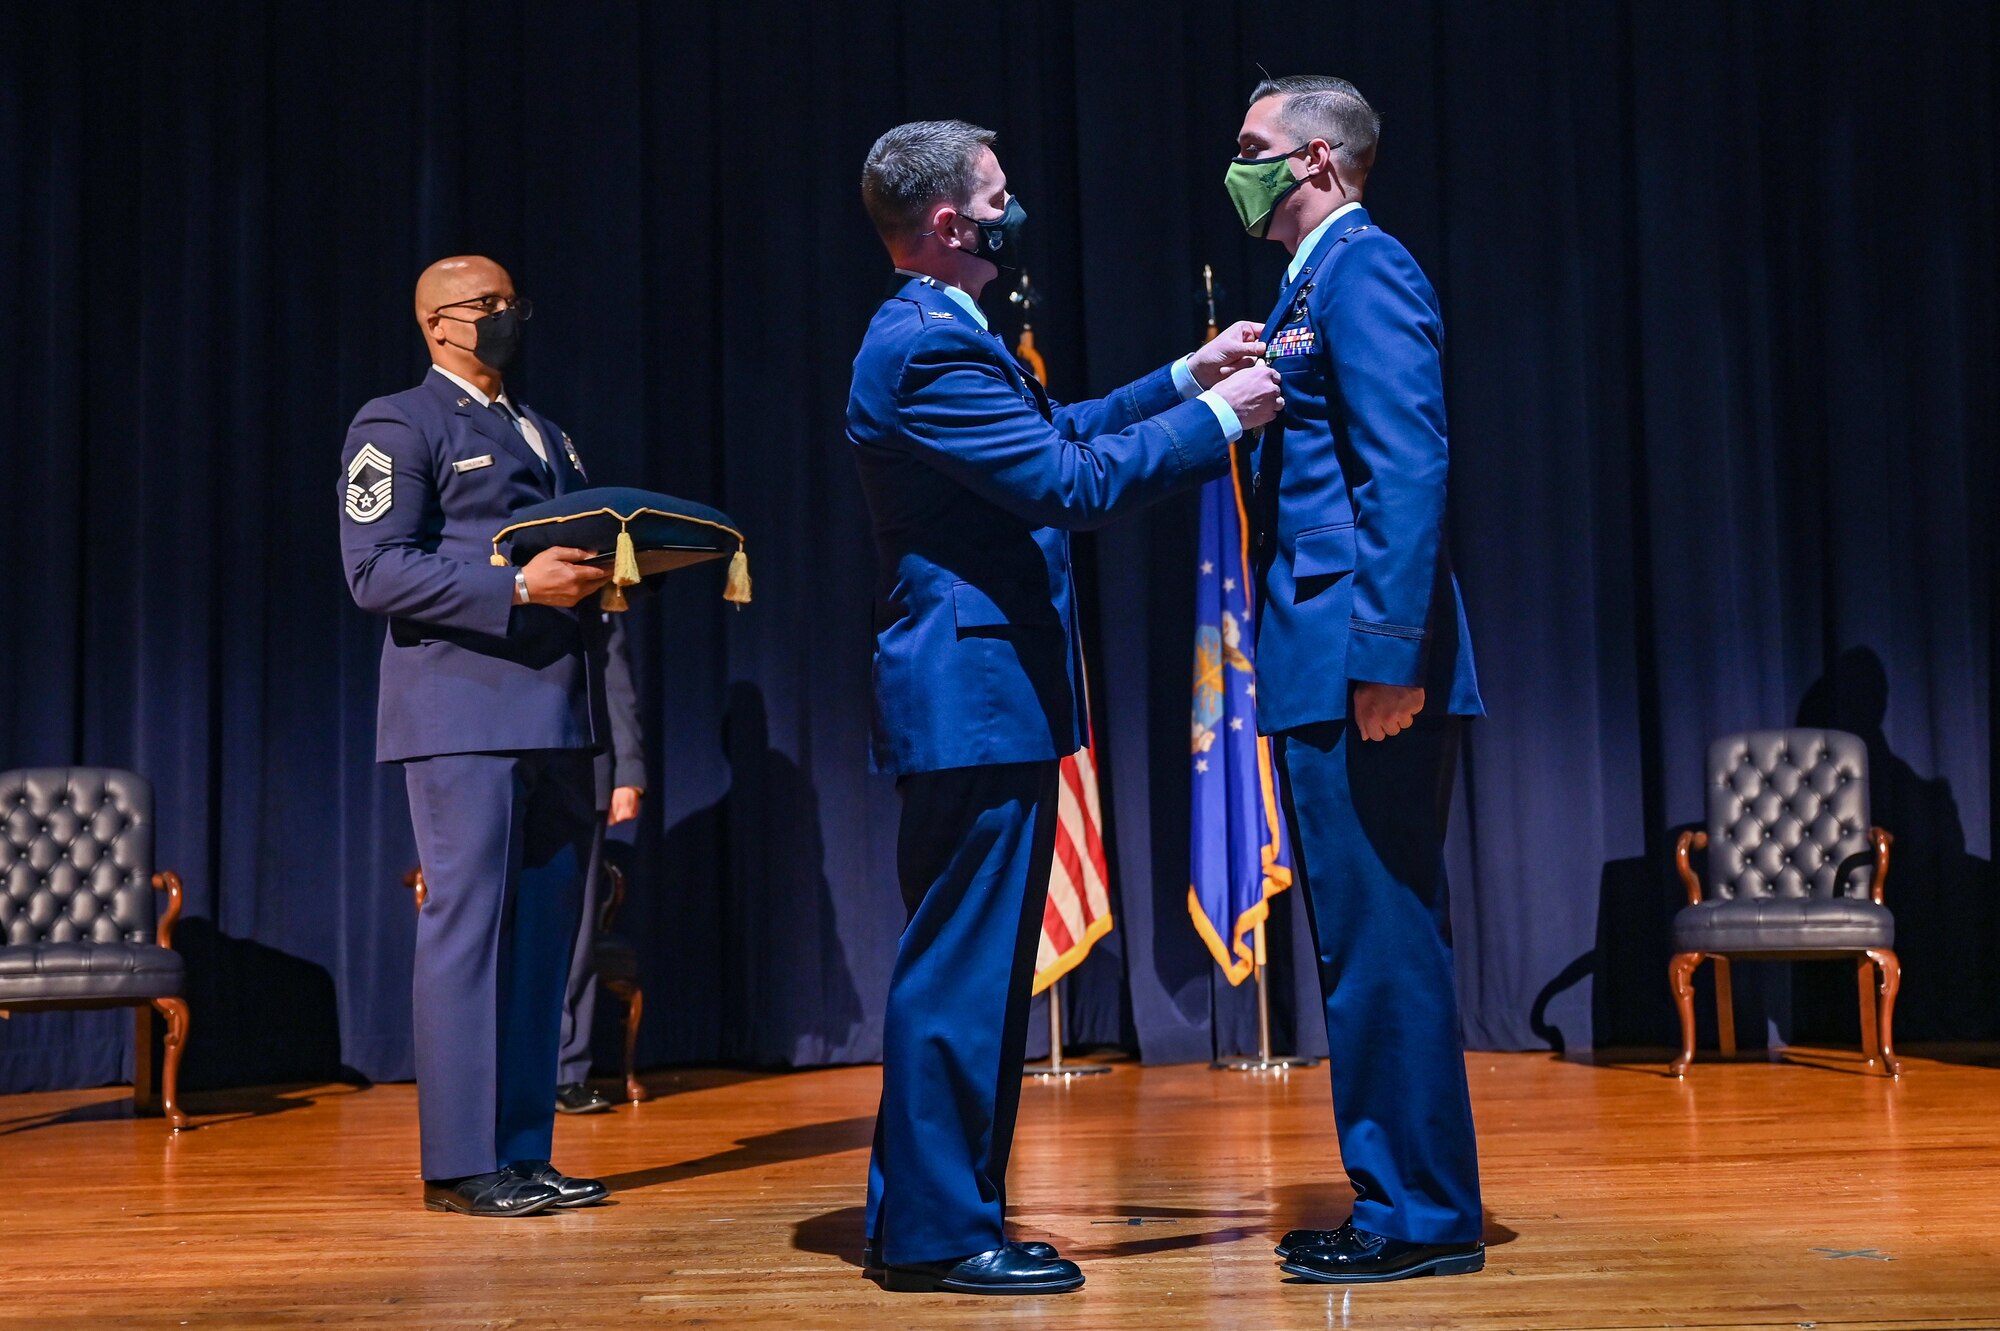 Airmen receiving an award